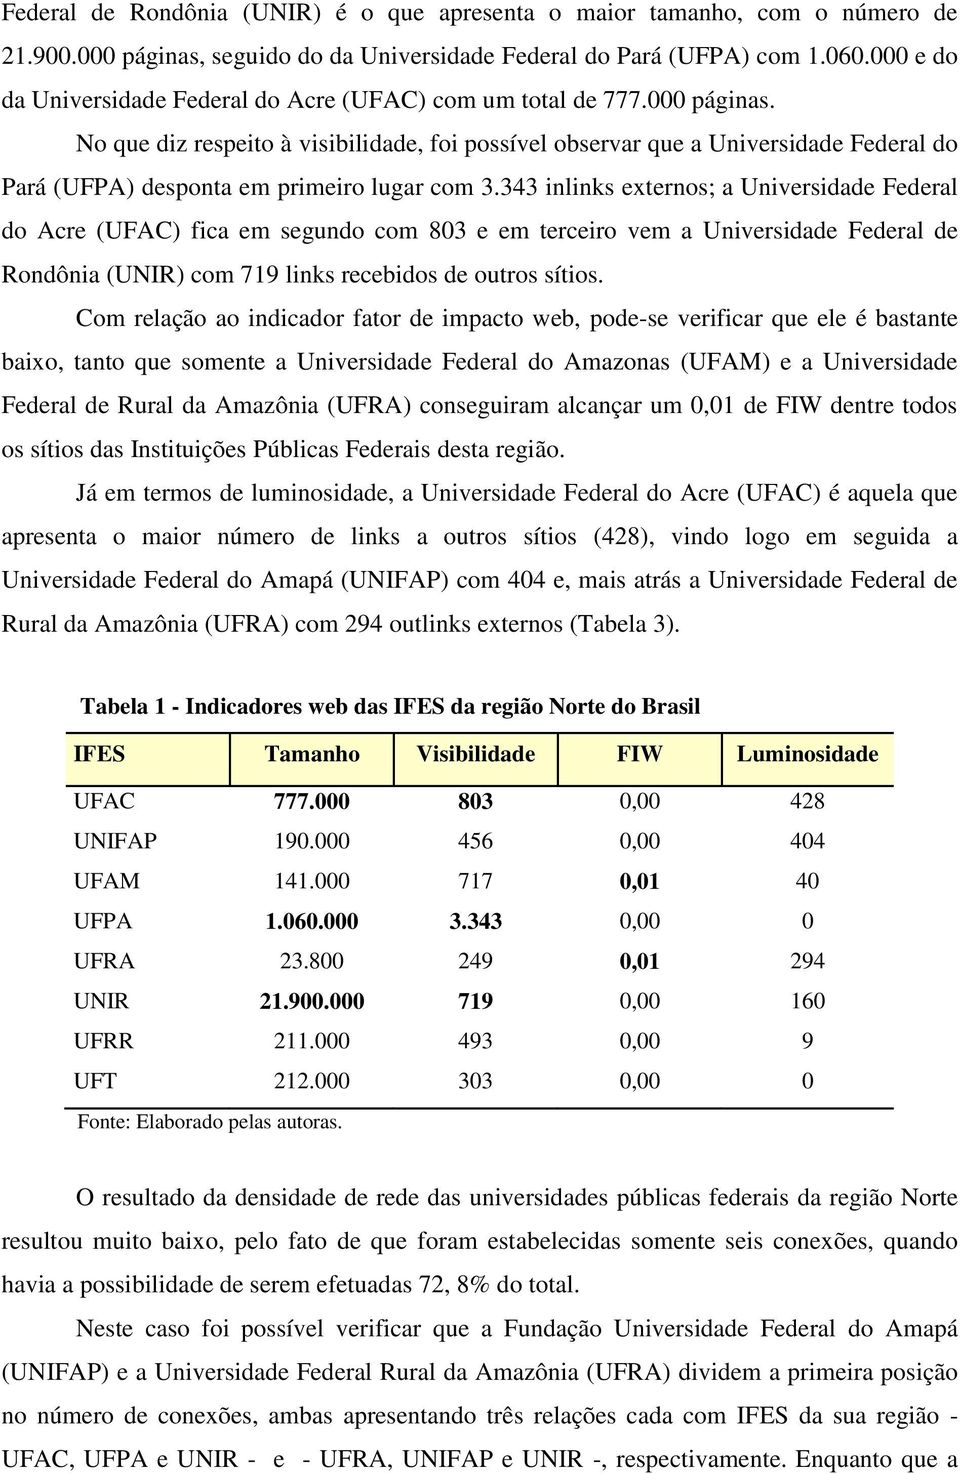 No que diz respeito à visibilidade, foi possível observar que a Universidade Federal do Pará (UFPA) desponta em primeiro lugar com 3.